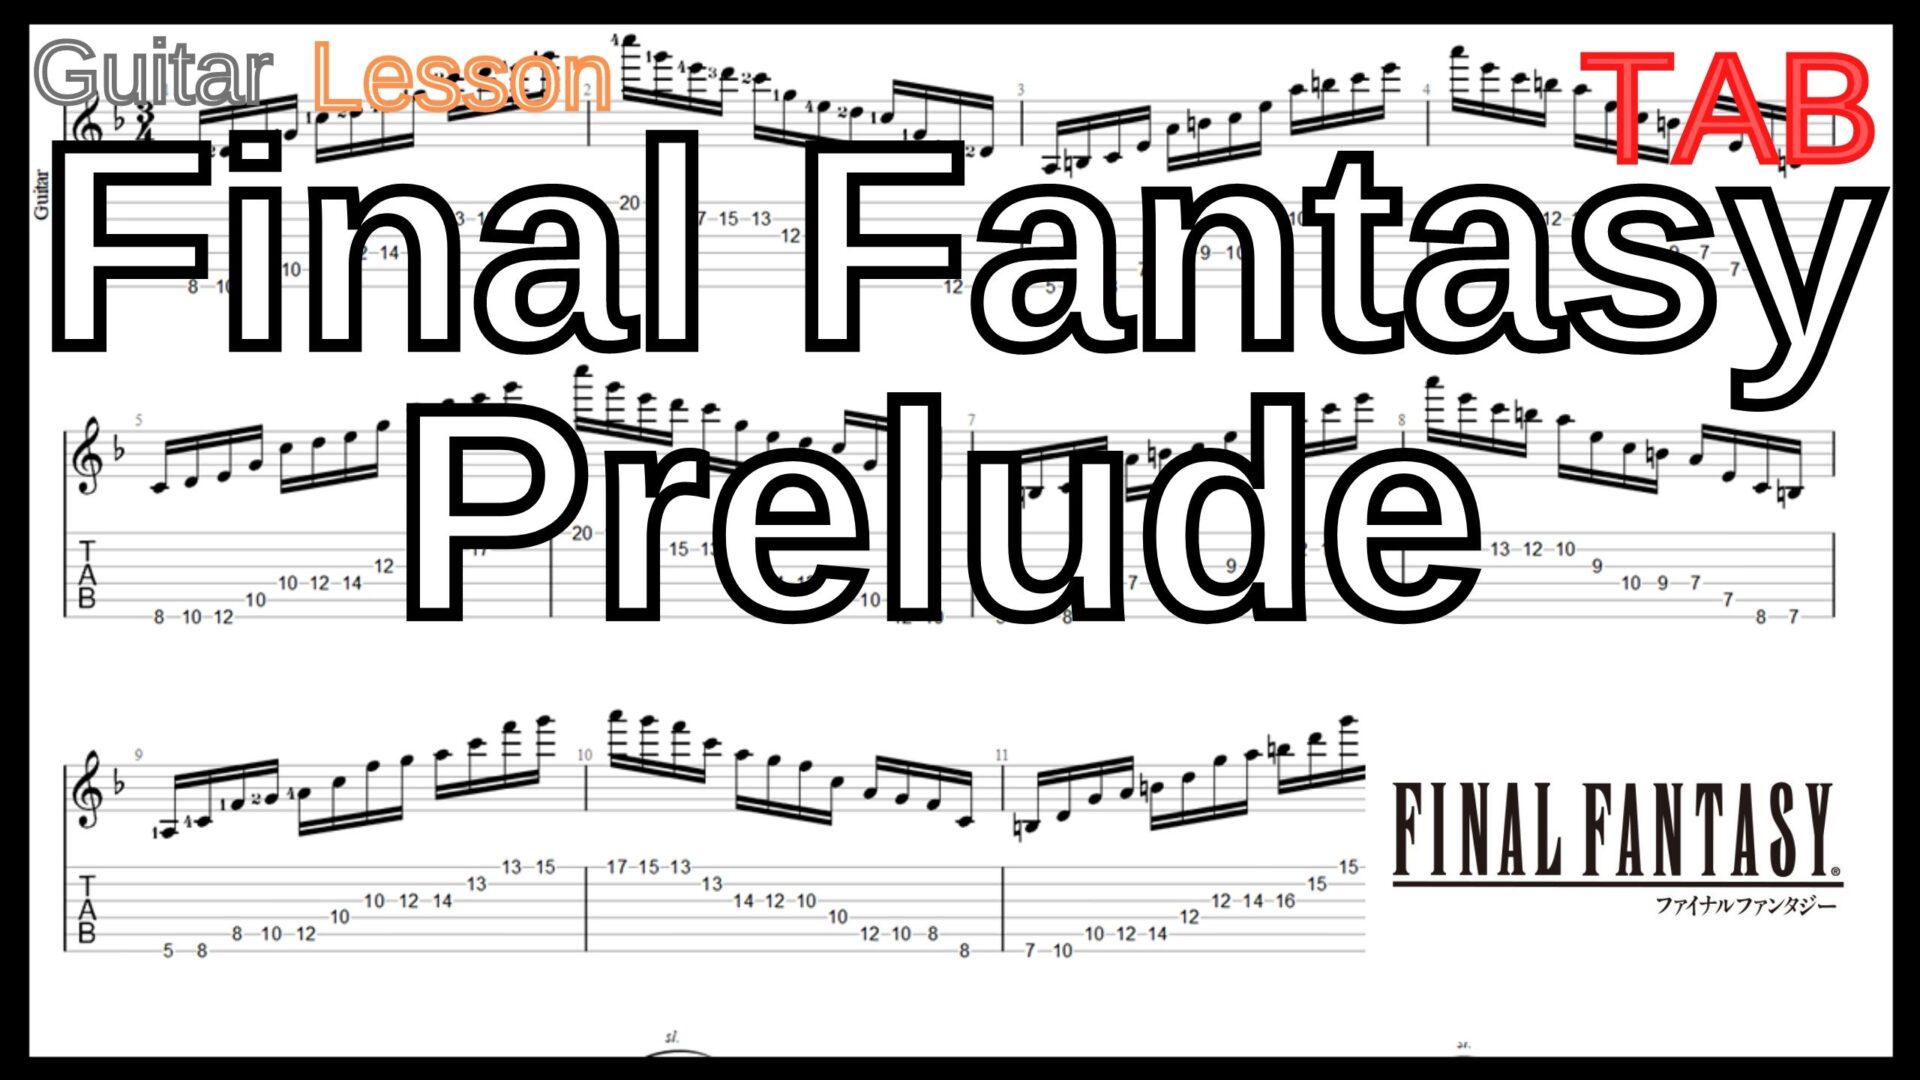 【ギターハンマリング プリング(レガート)上達練習】Final Fantasy Prelude FF ファイナルファンタジー プレリュード ギター Guitar Lesson【Picking ピッキング】ギターのハンマリング プリング(レガート)が上手くなりたい人にオススメのフレーズ特集｡初心者さんにもオススメ！